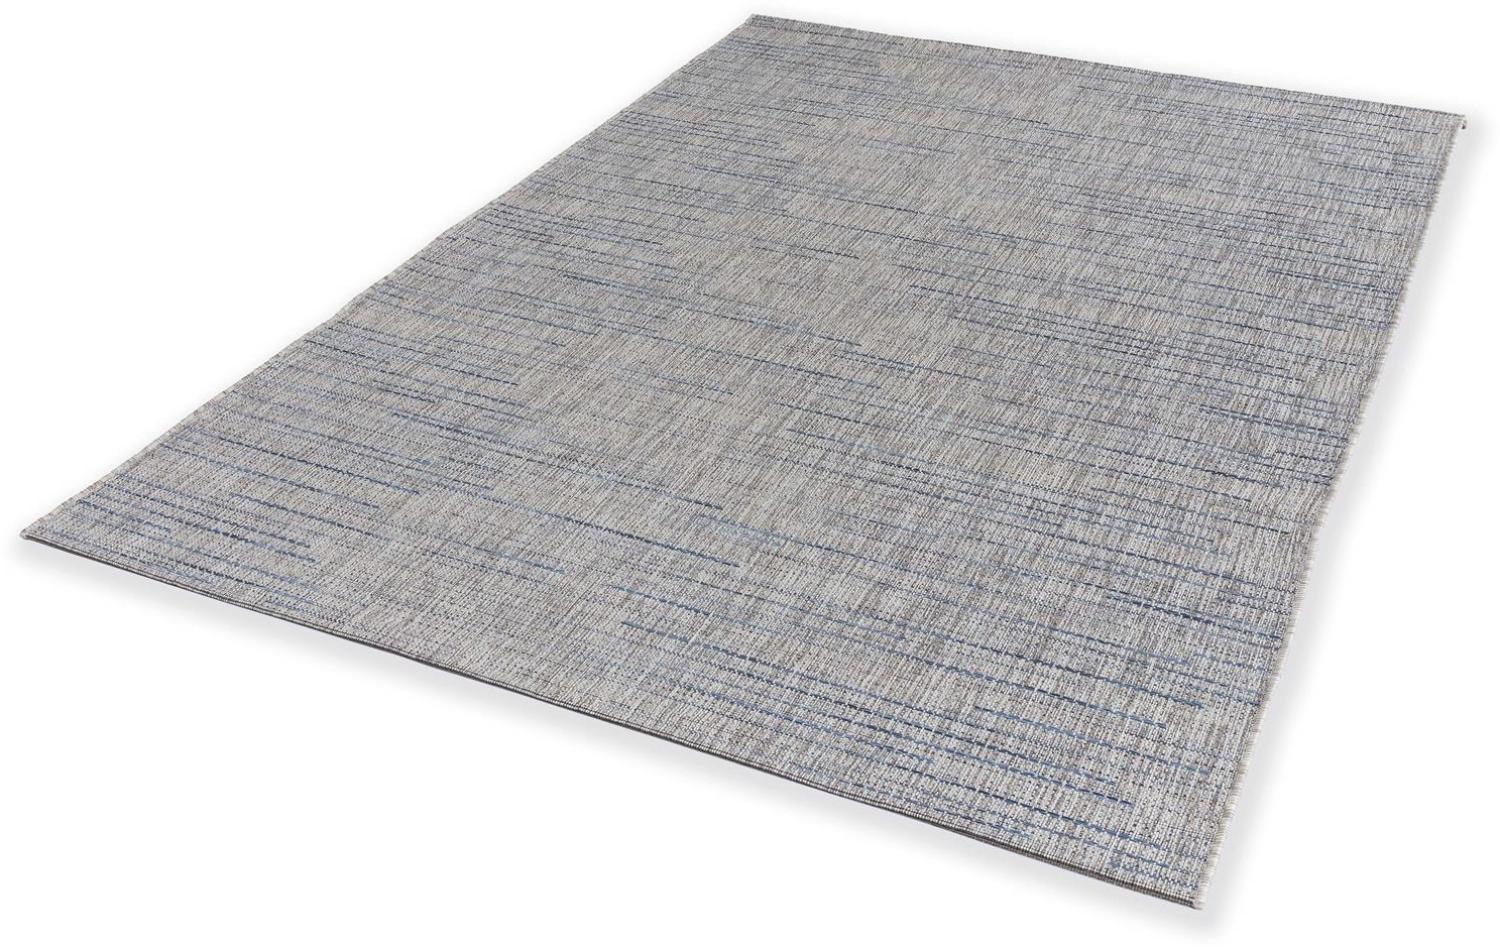 Teppich in blau aus 100% Polypropylen - 230x160x0,5cm (LxBxH) Bild 1